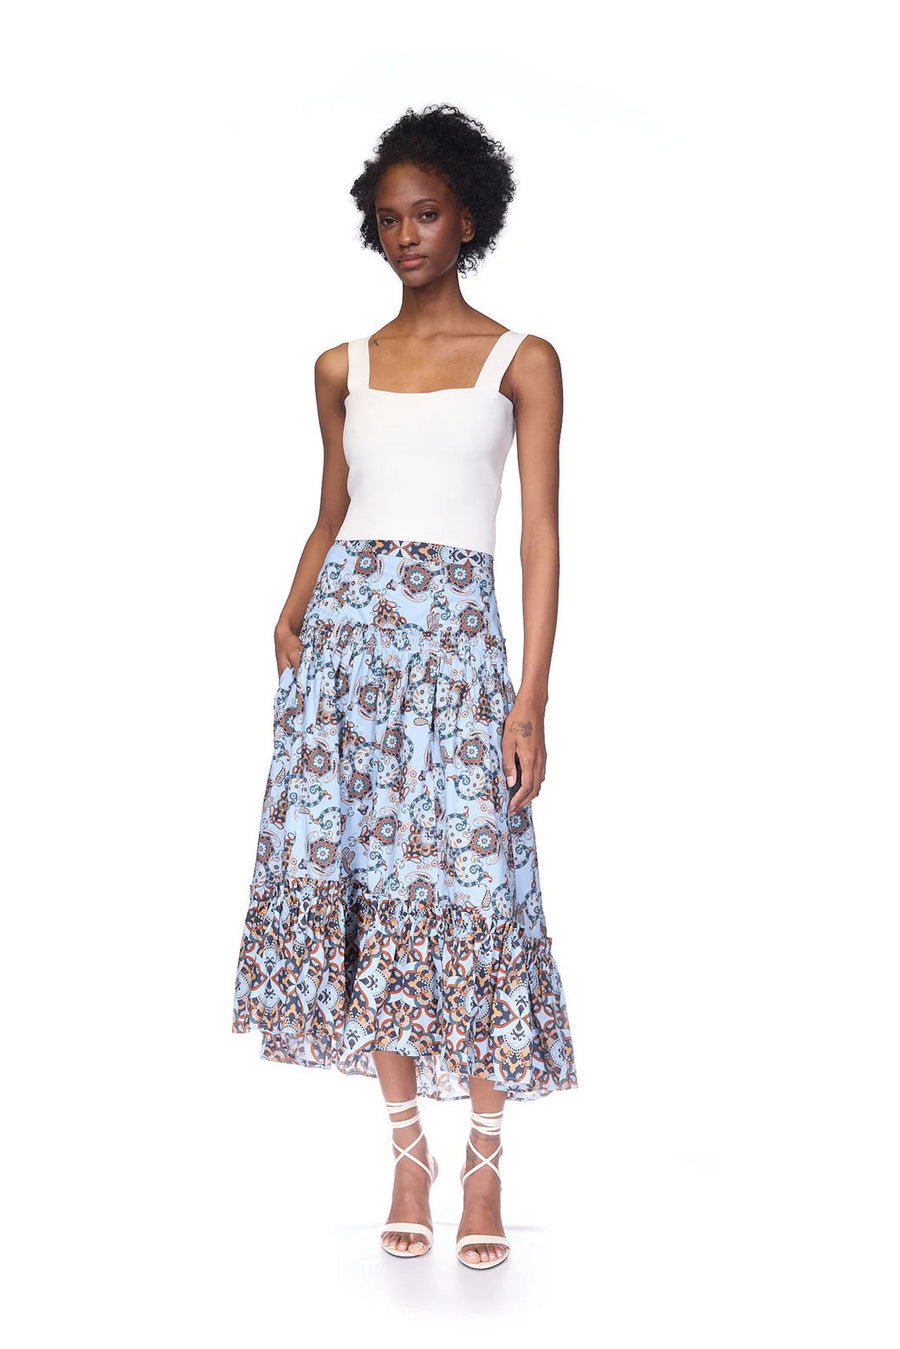 cara cara tisbury skirt blue floral figure front